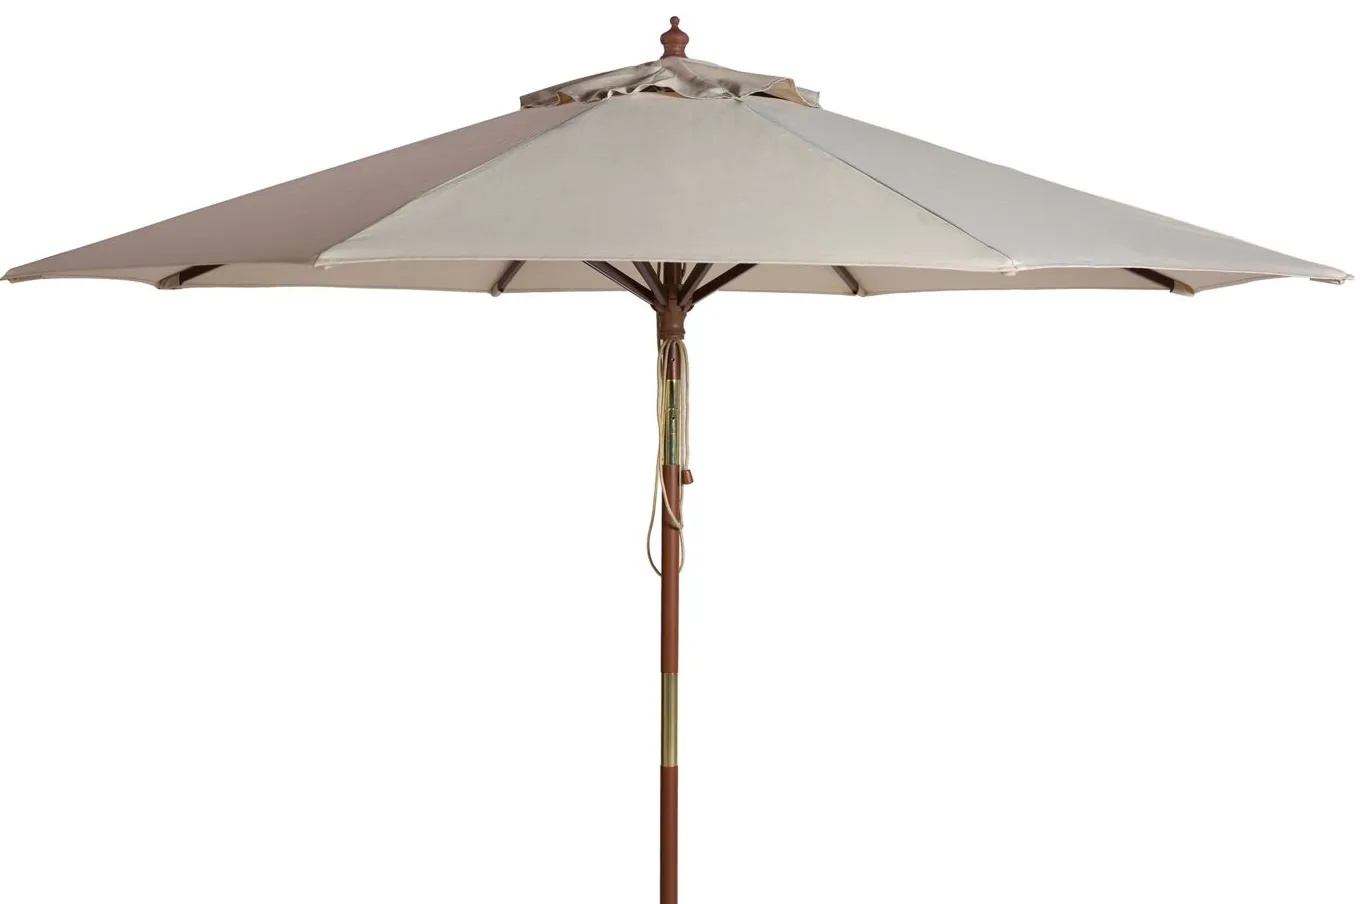 Bethany Outdoor Wooden Umbrella in Beige by Safavieh